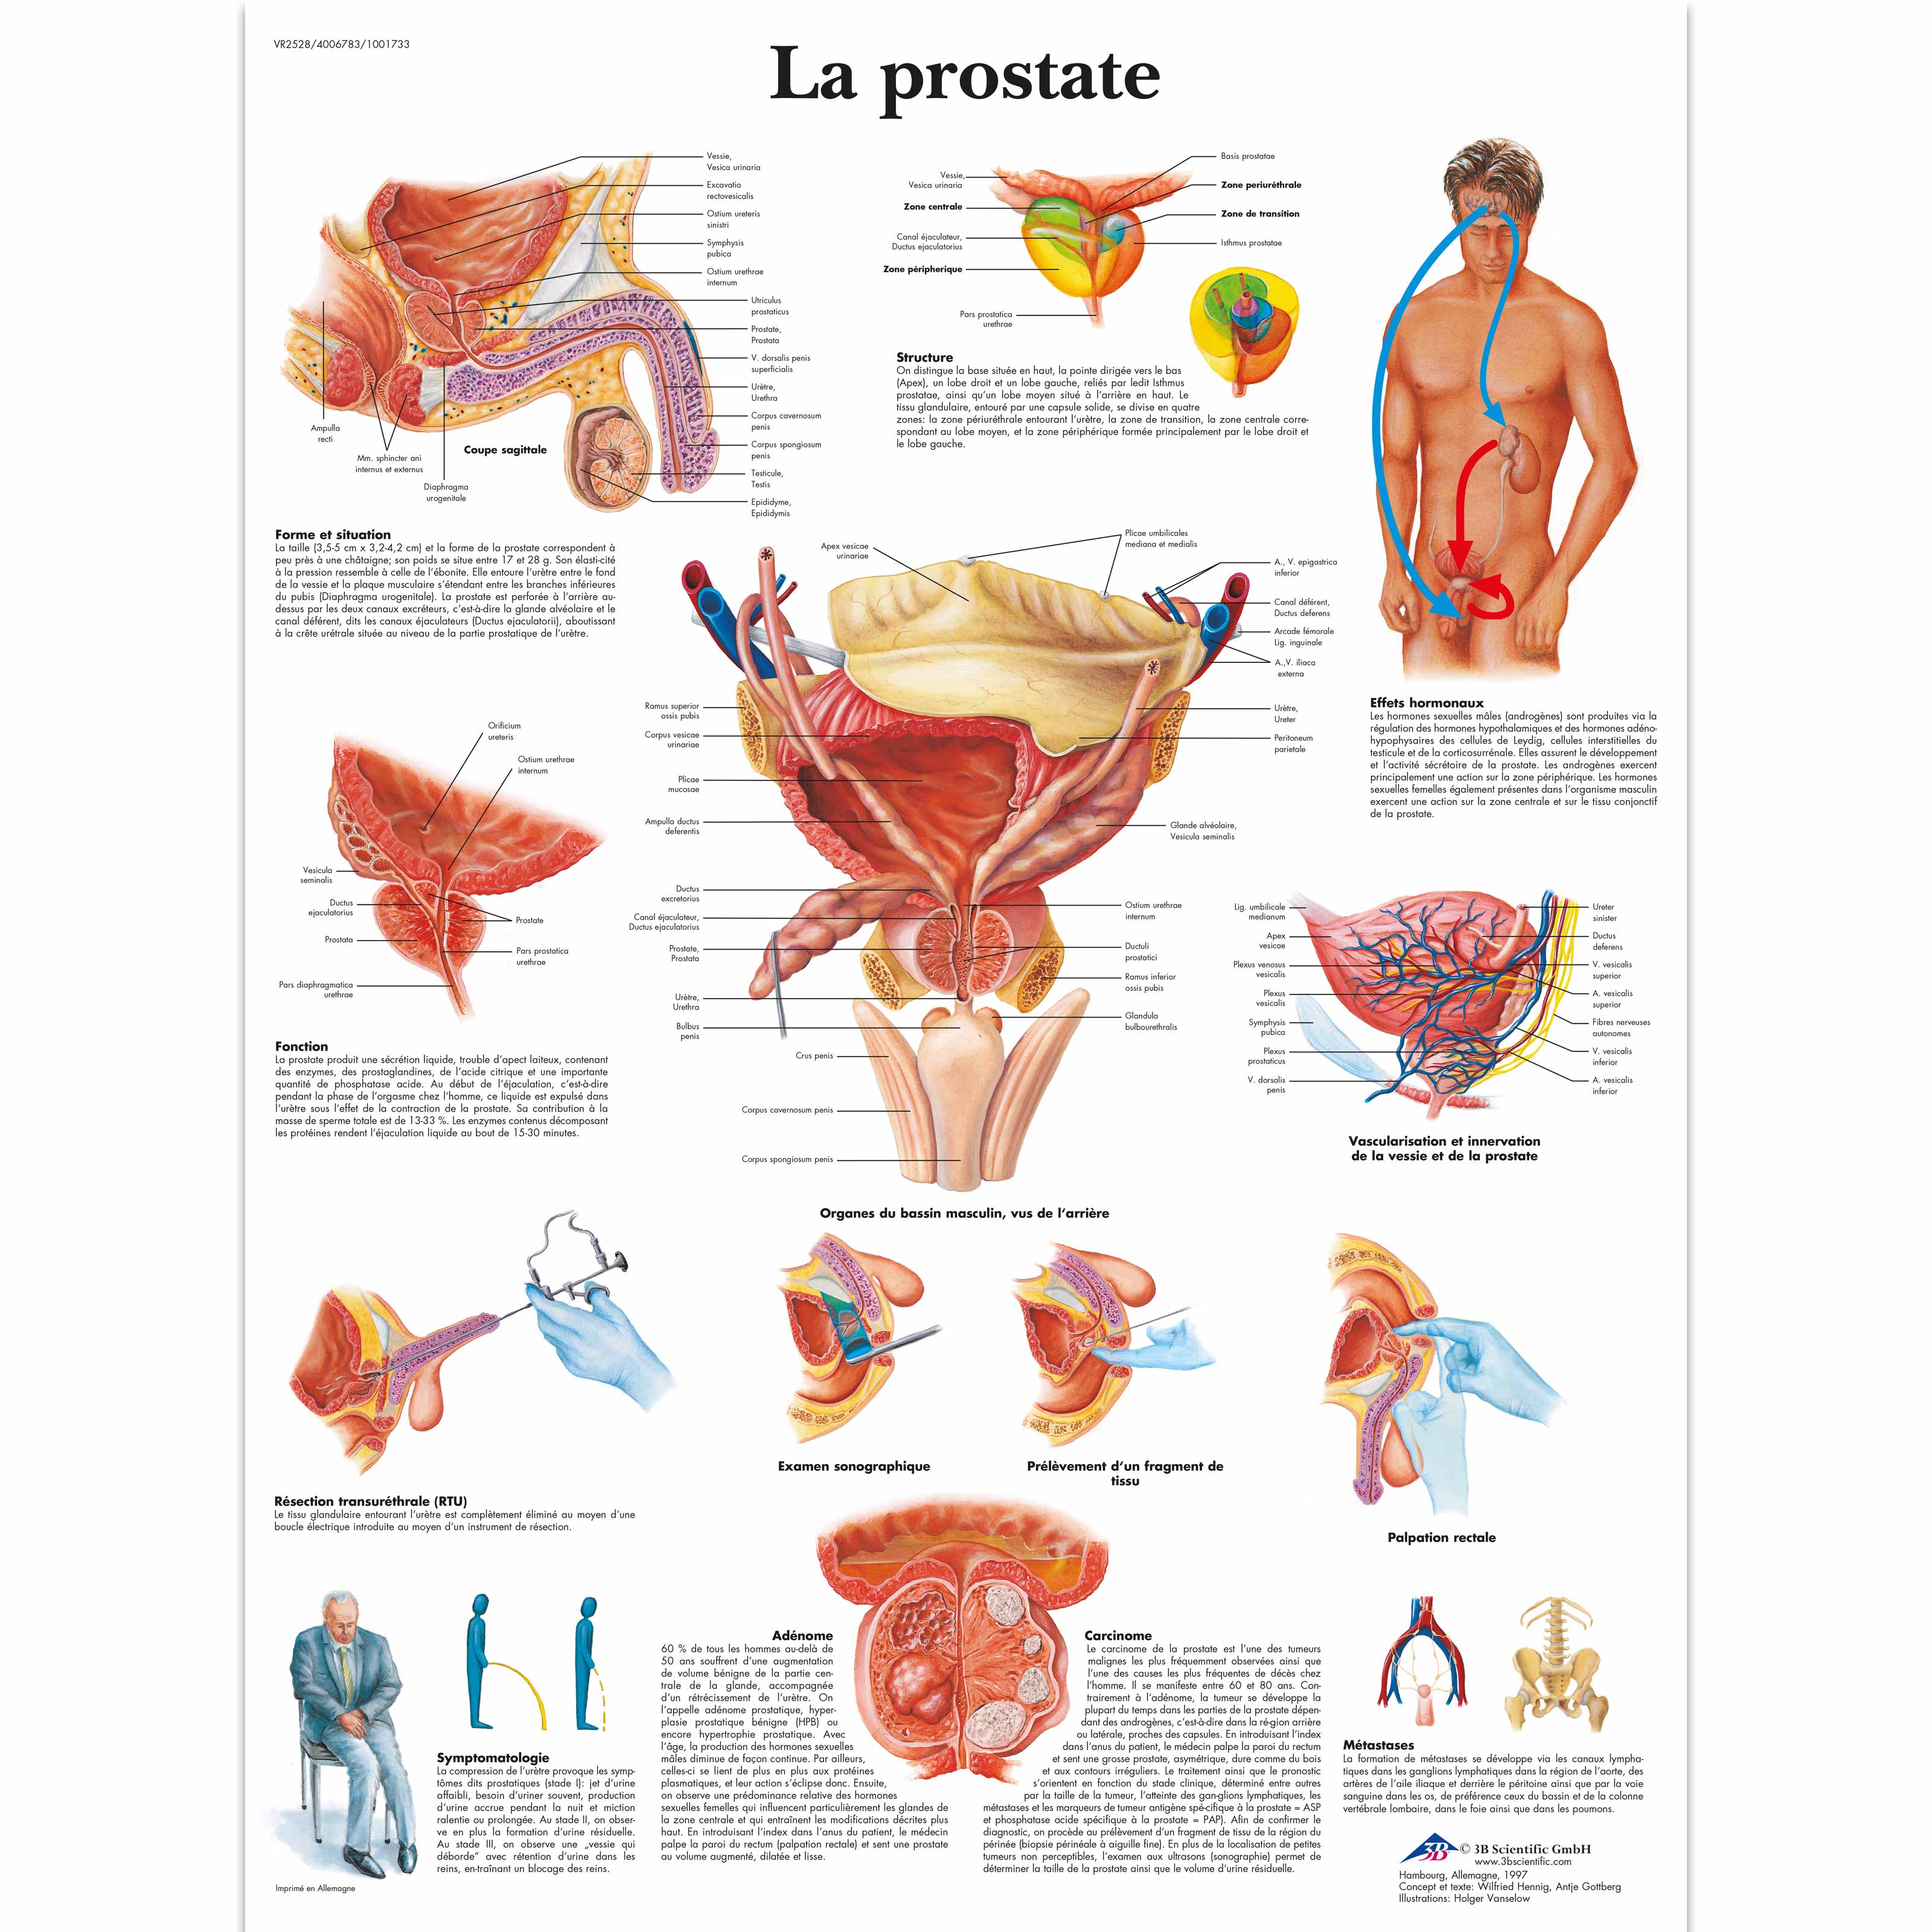 anatomie prostate